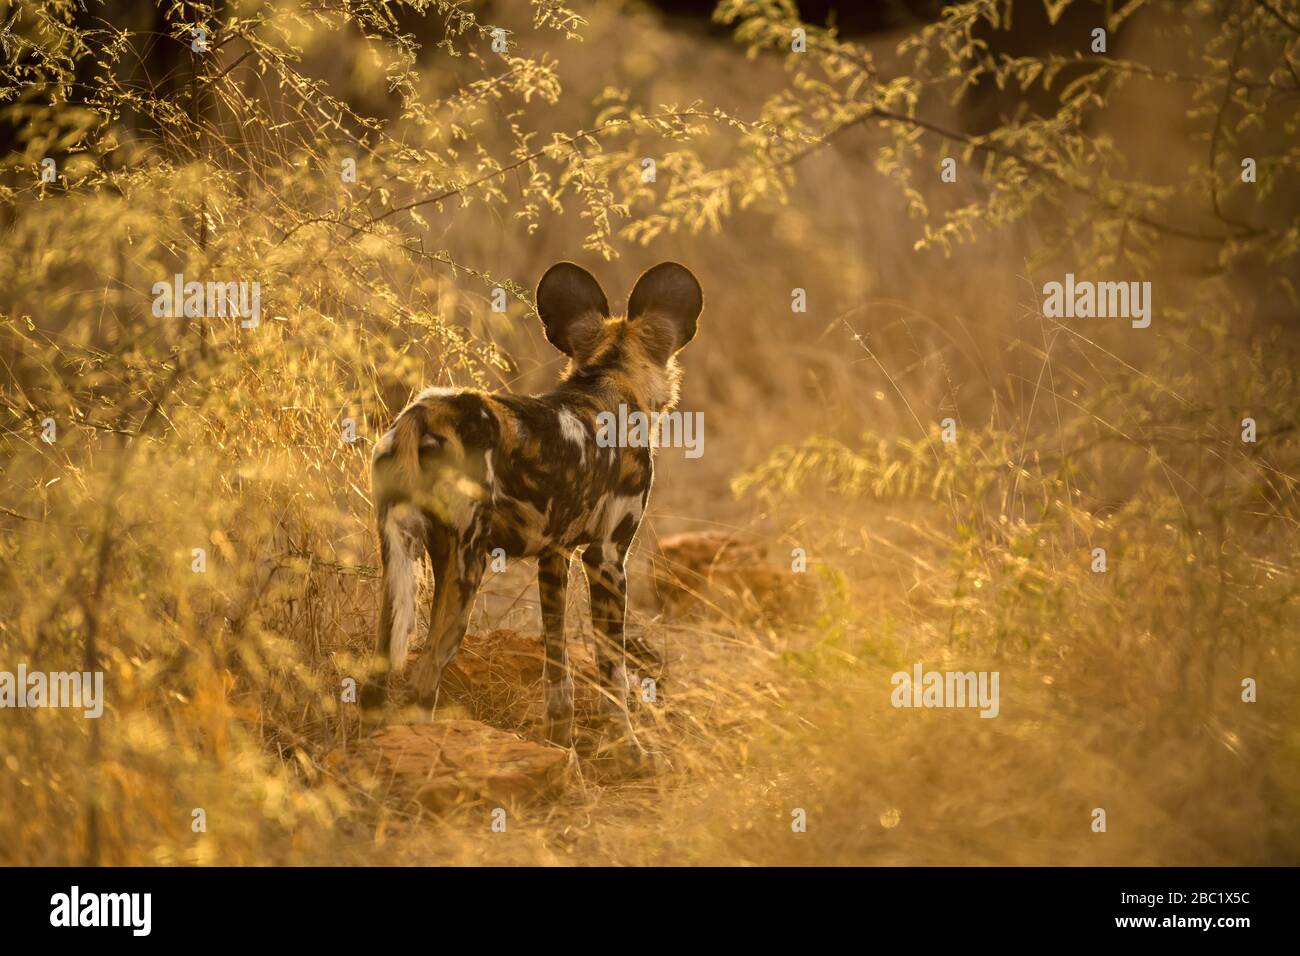 Una hermosa fotografía al atardecer de un perro salvaje mirando atentamente el arbusto, enmarcado por hojas doradas, tomada en la Reserva de Caza Madikwe, Sudáfrica. Foto de stock